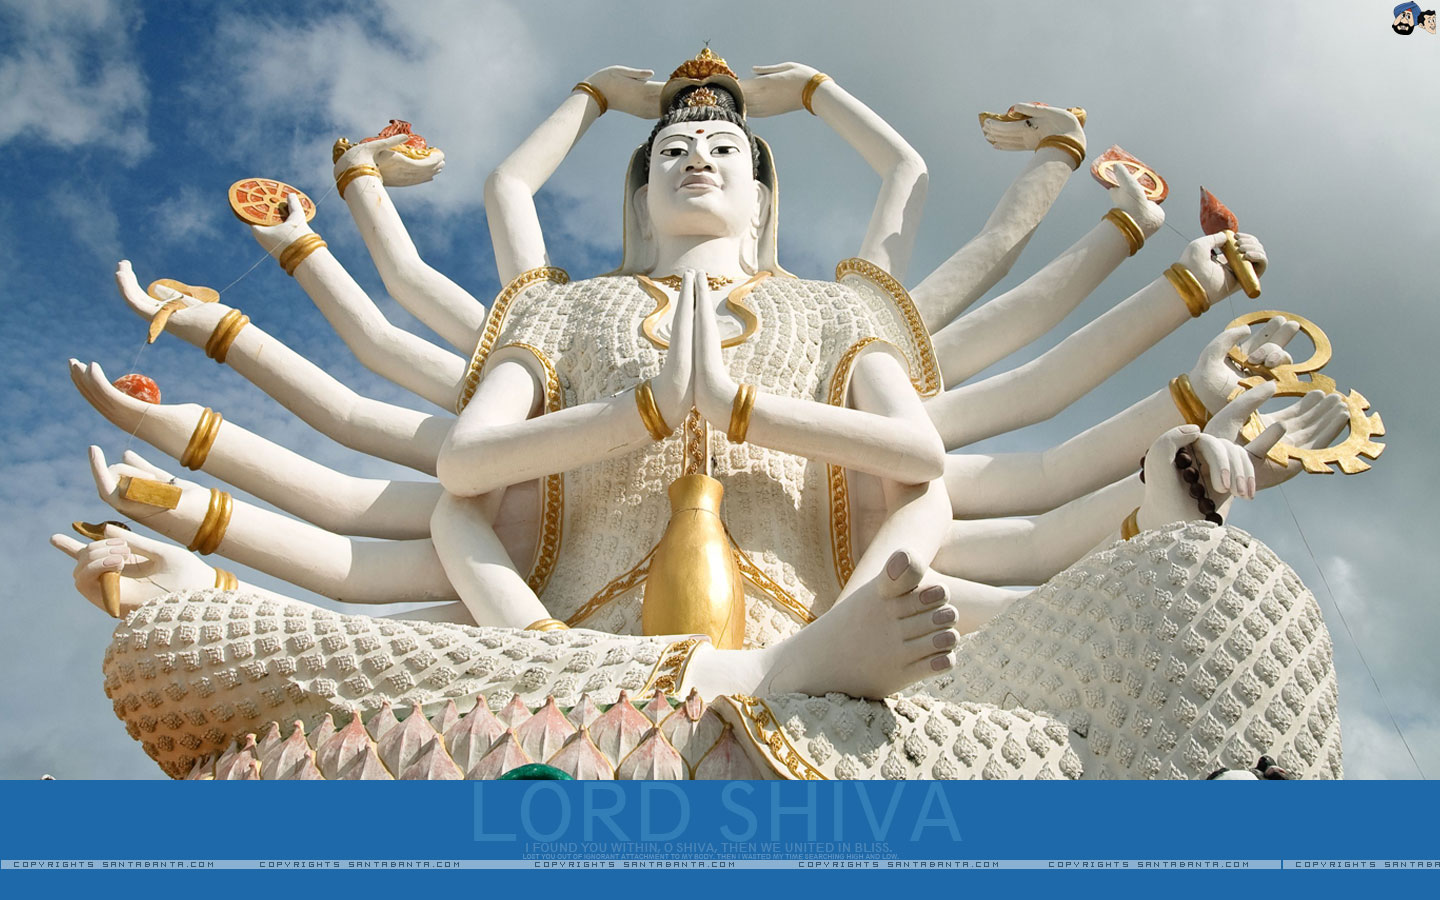 50+] Lord Shiva Wallpapers 3D - WallpaperSafari